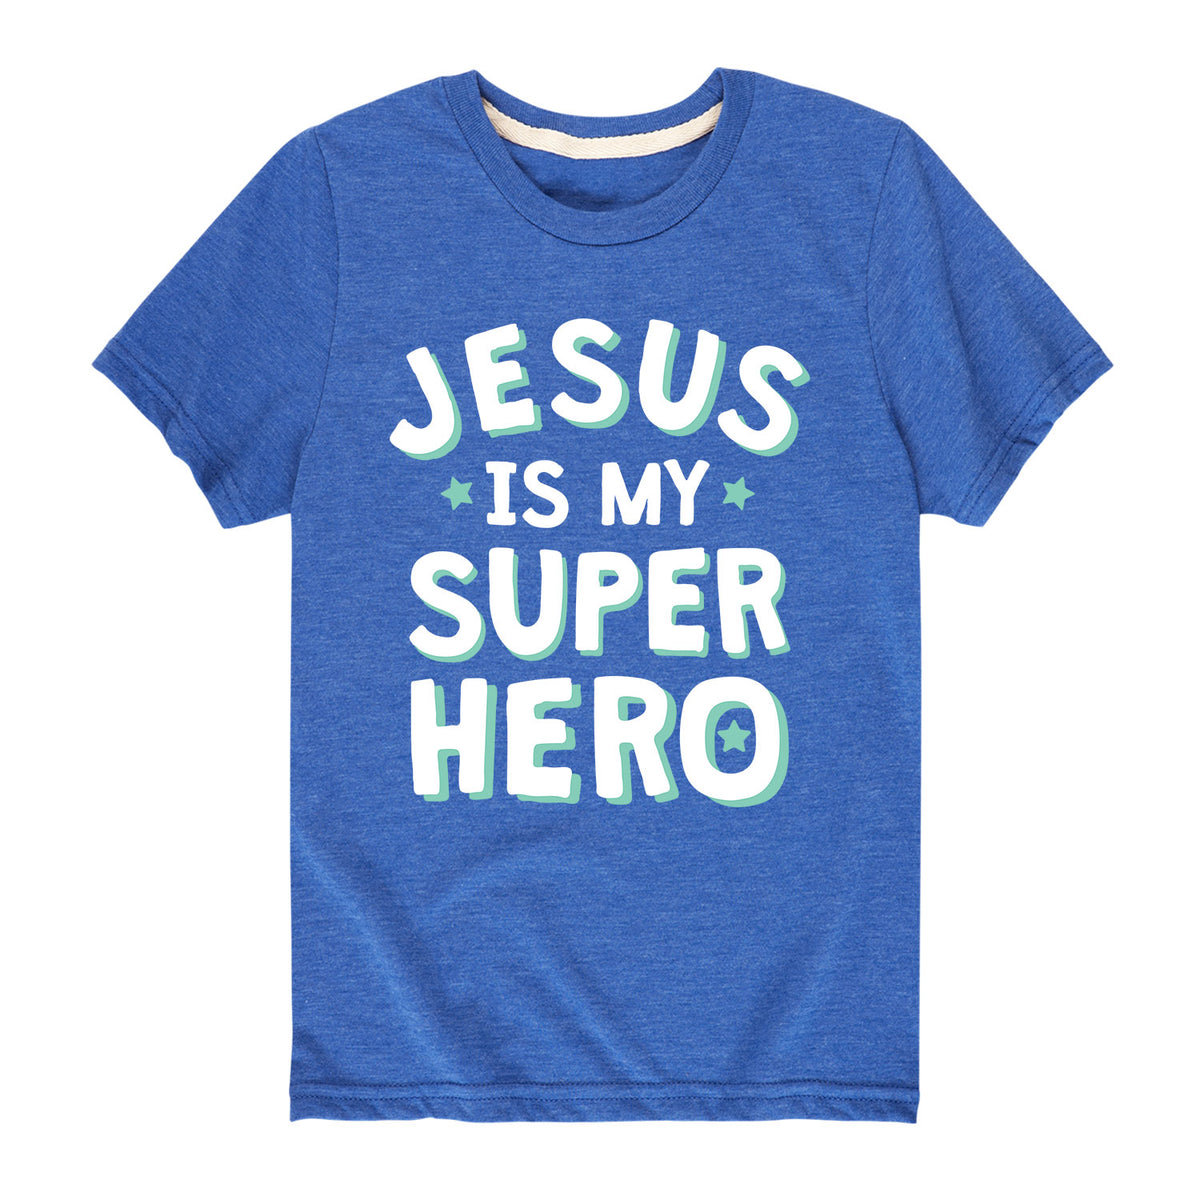 jesus my superhero